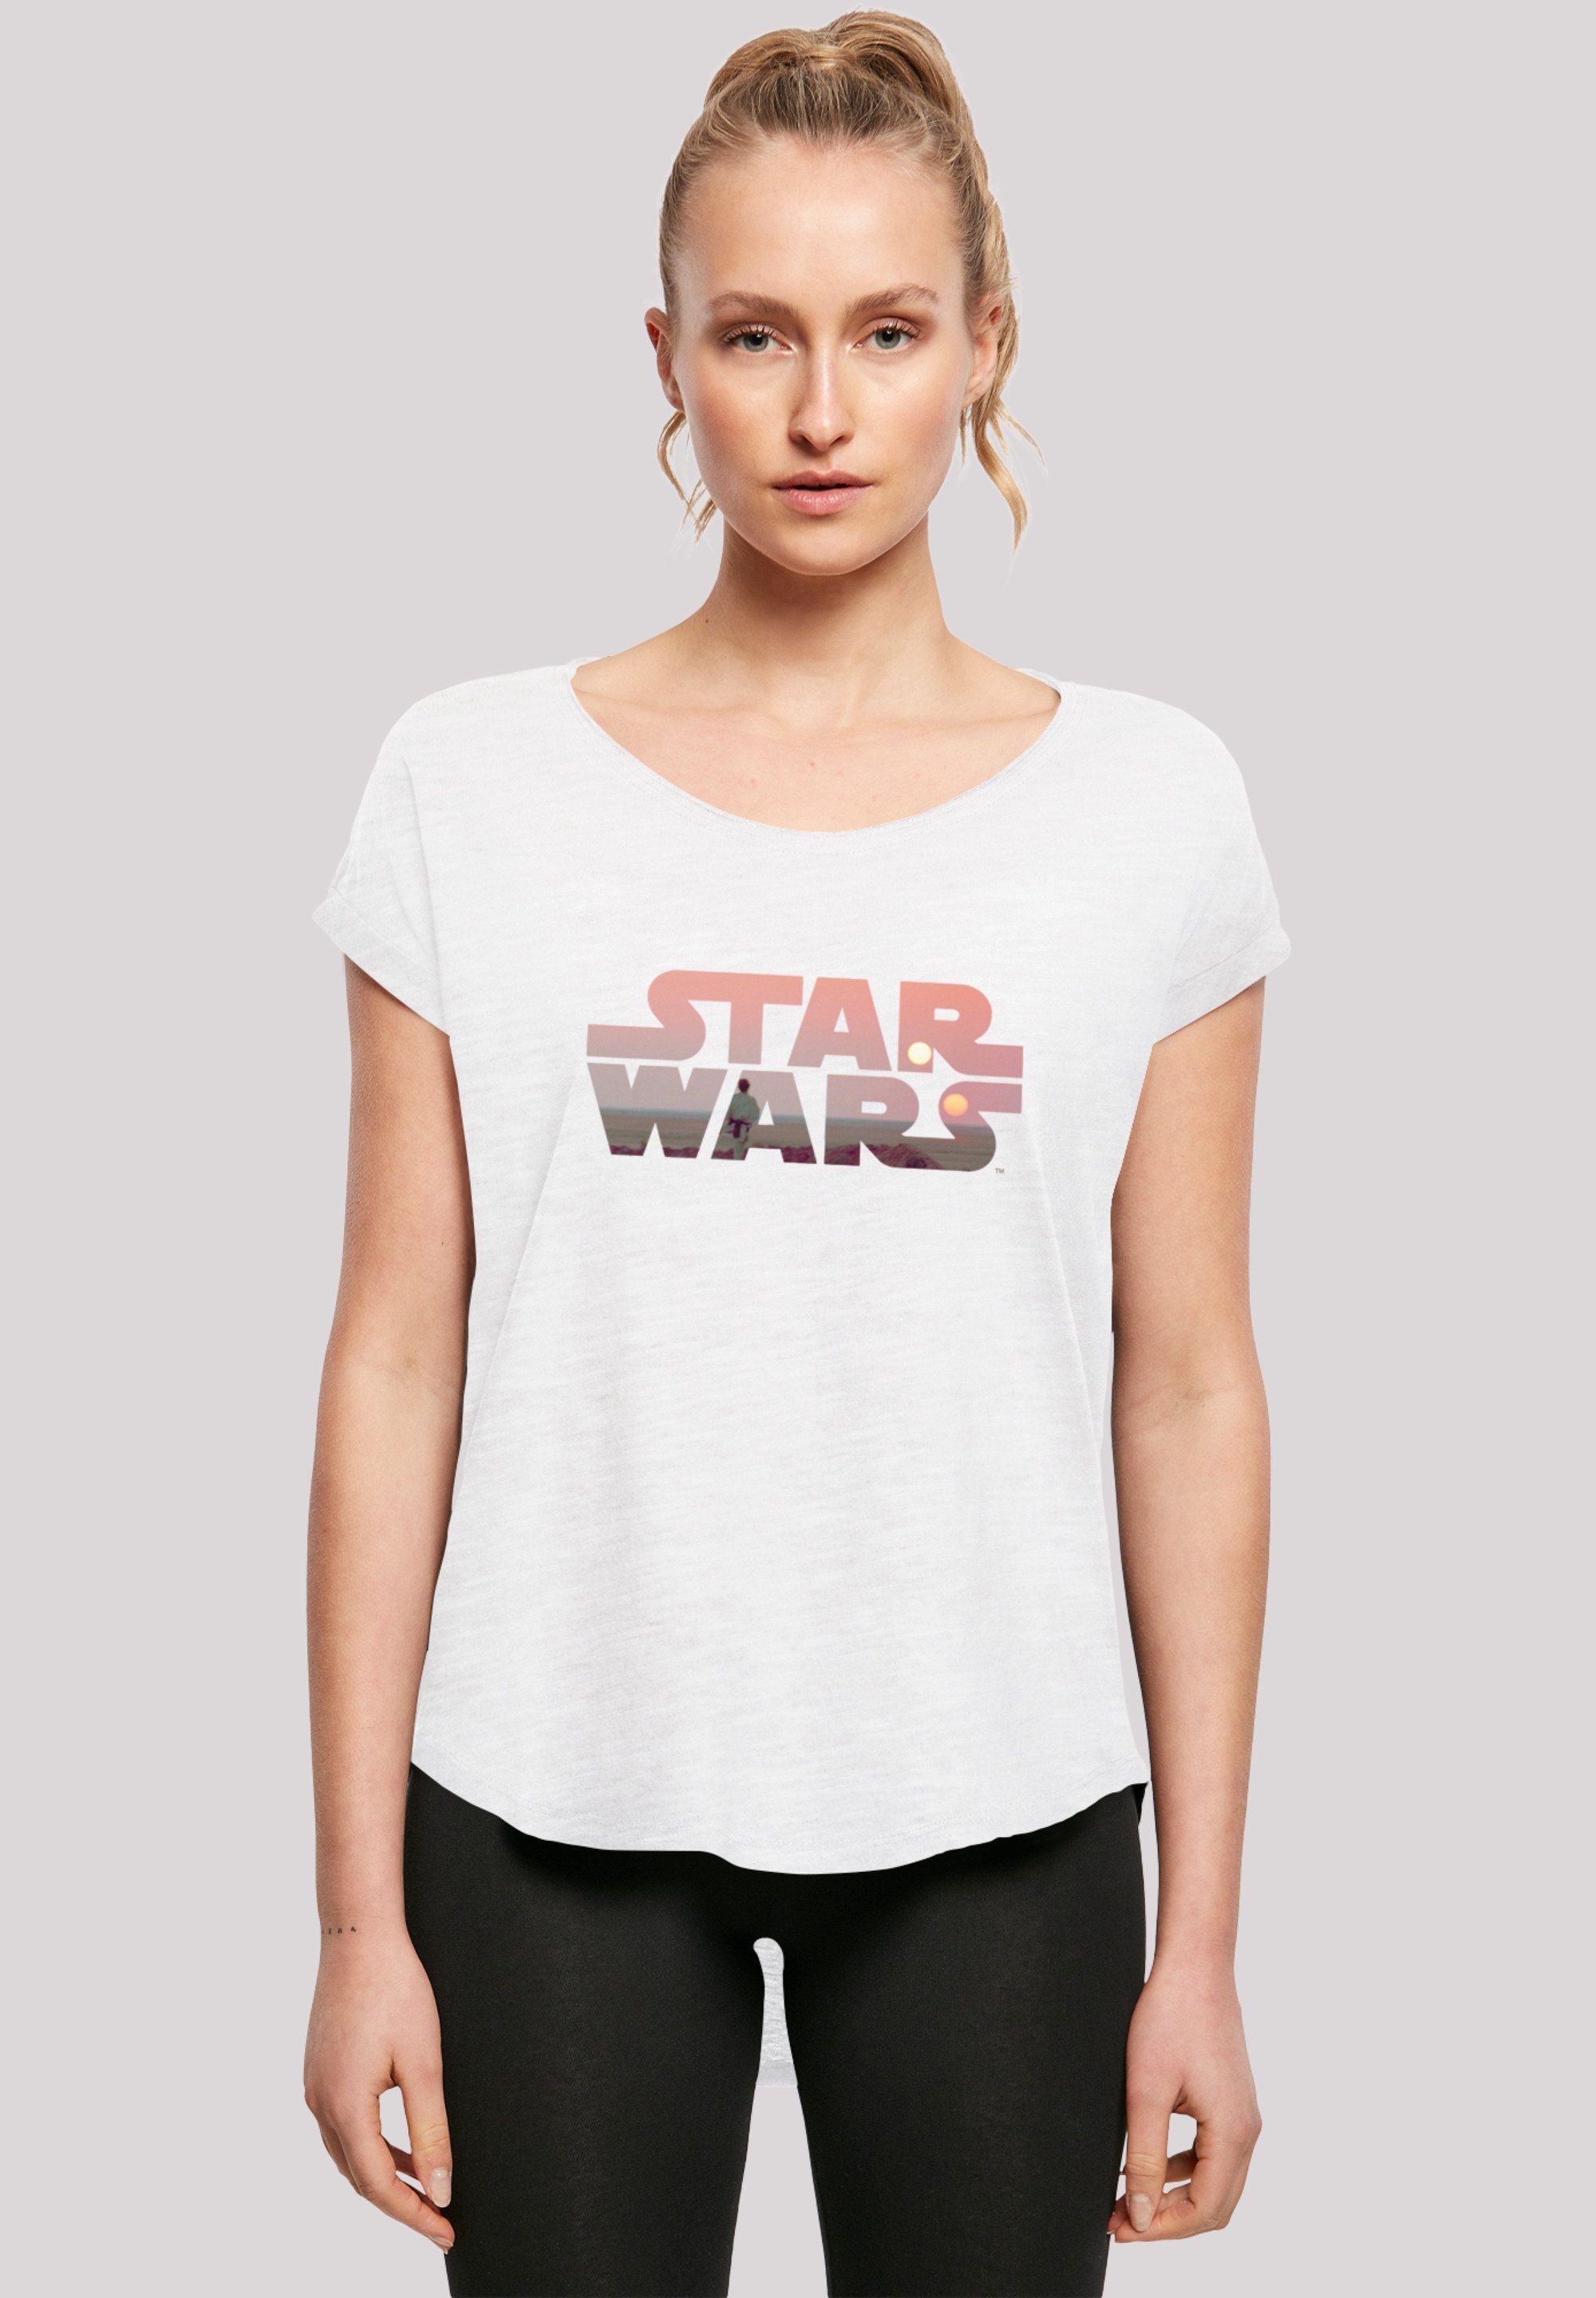 F4NT4STIC T-Shirt Logo Sehr Print, hohem Wars Baumwollstoff Tragekomfort Tatooine weicher Star mit